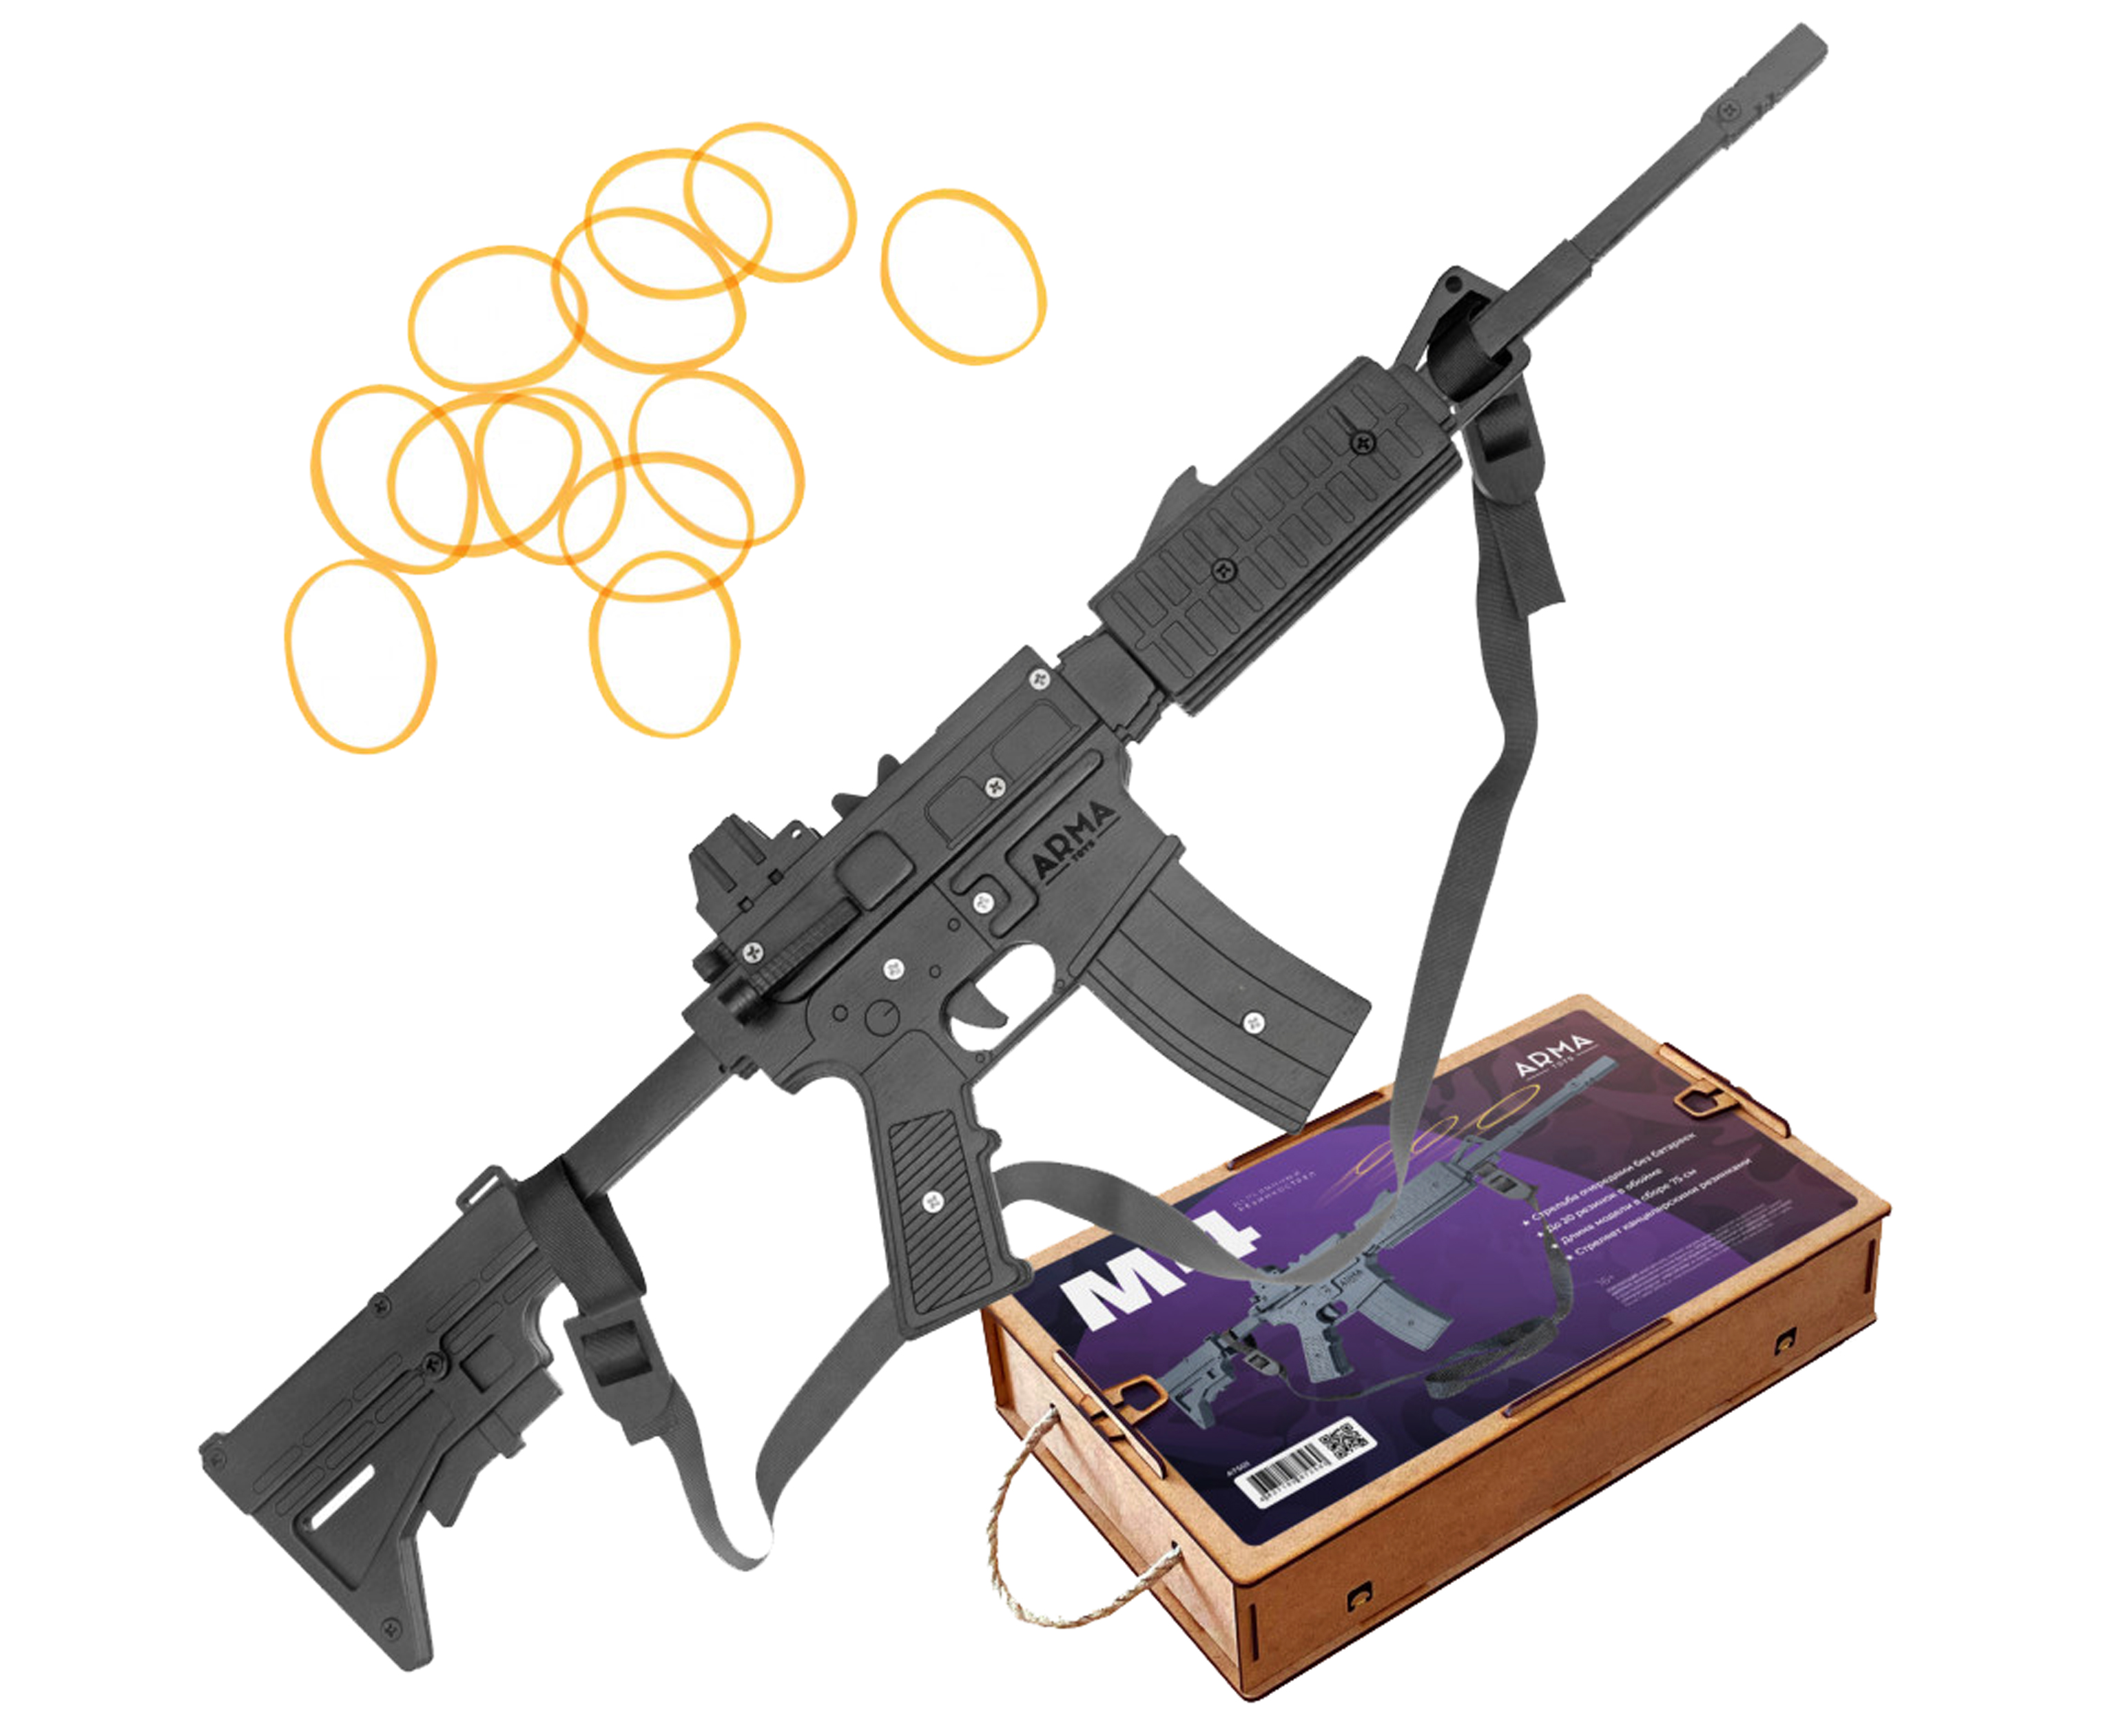 Резинкострел игрушечный Arma toys винтовка M4 макет, AR-15, AT501 резинкострел arma toys автомат ак 47 макет окрашенный калашников at006k